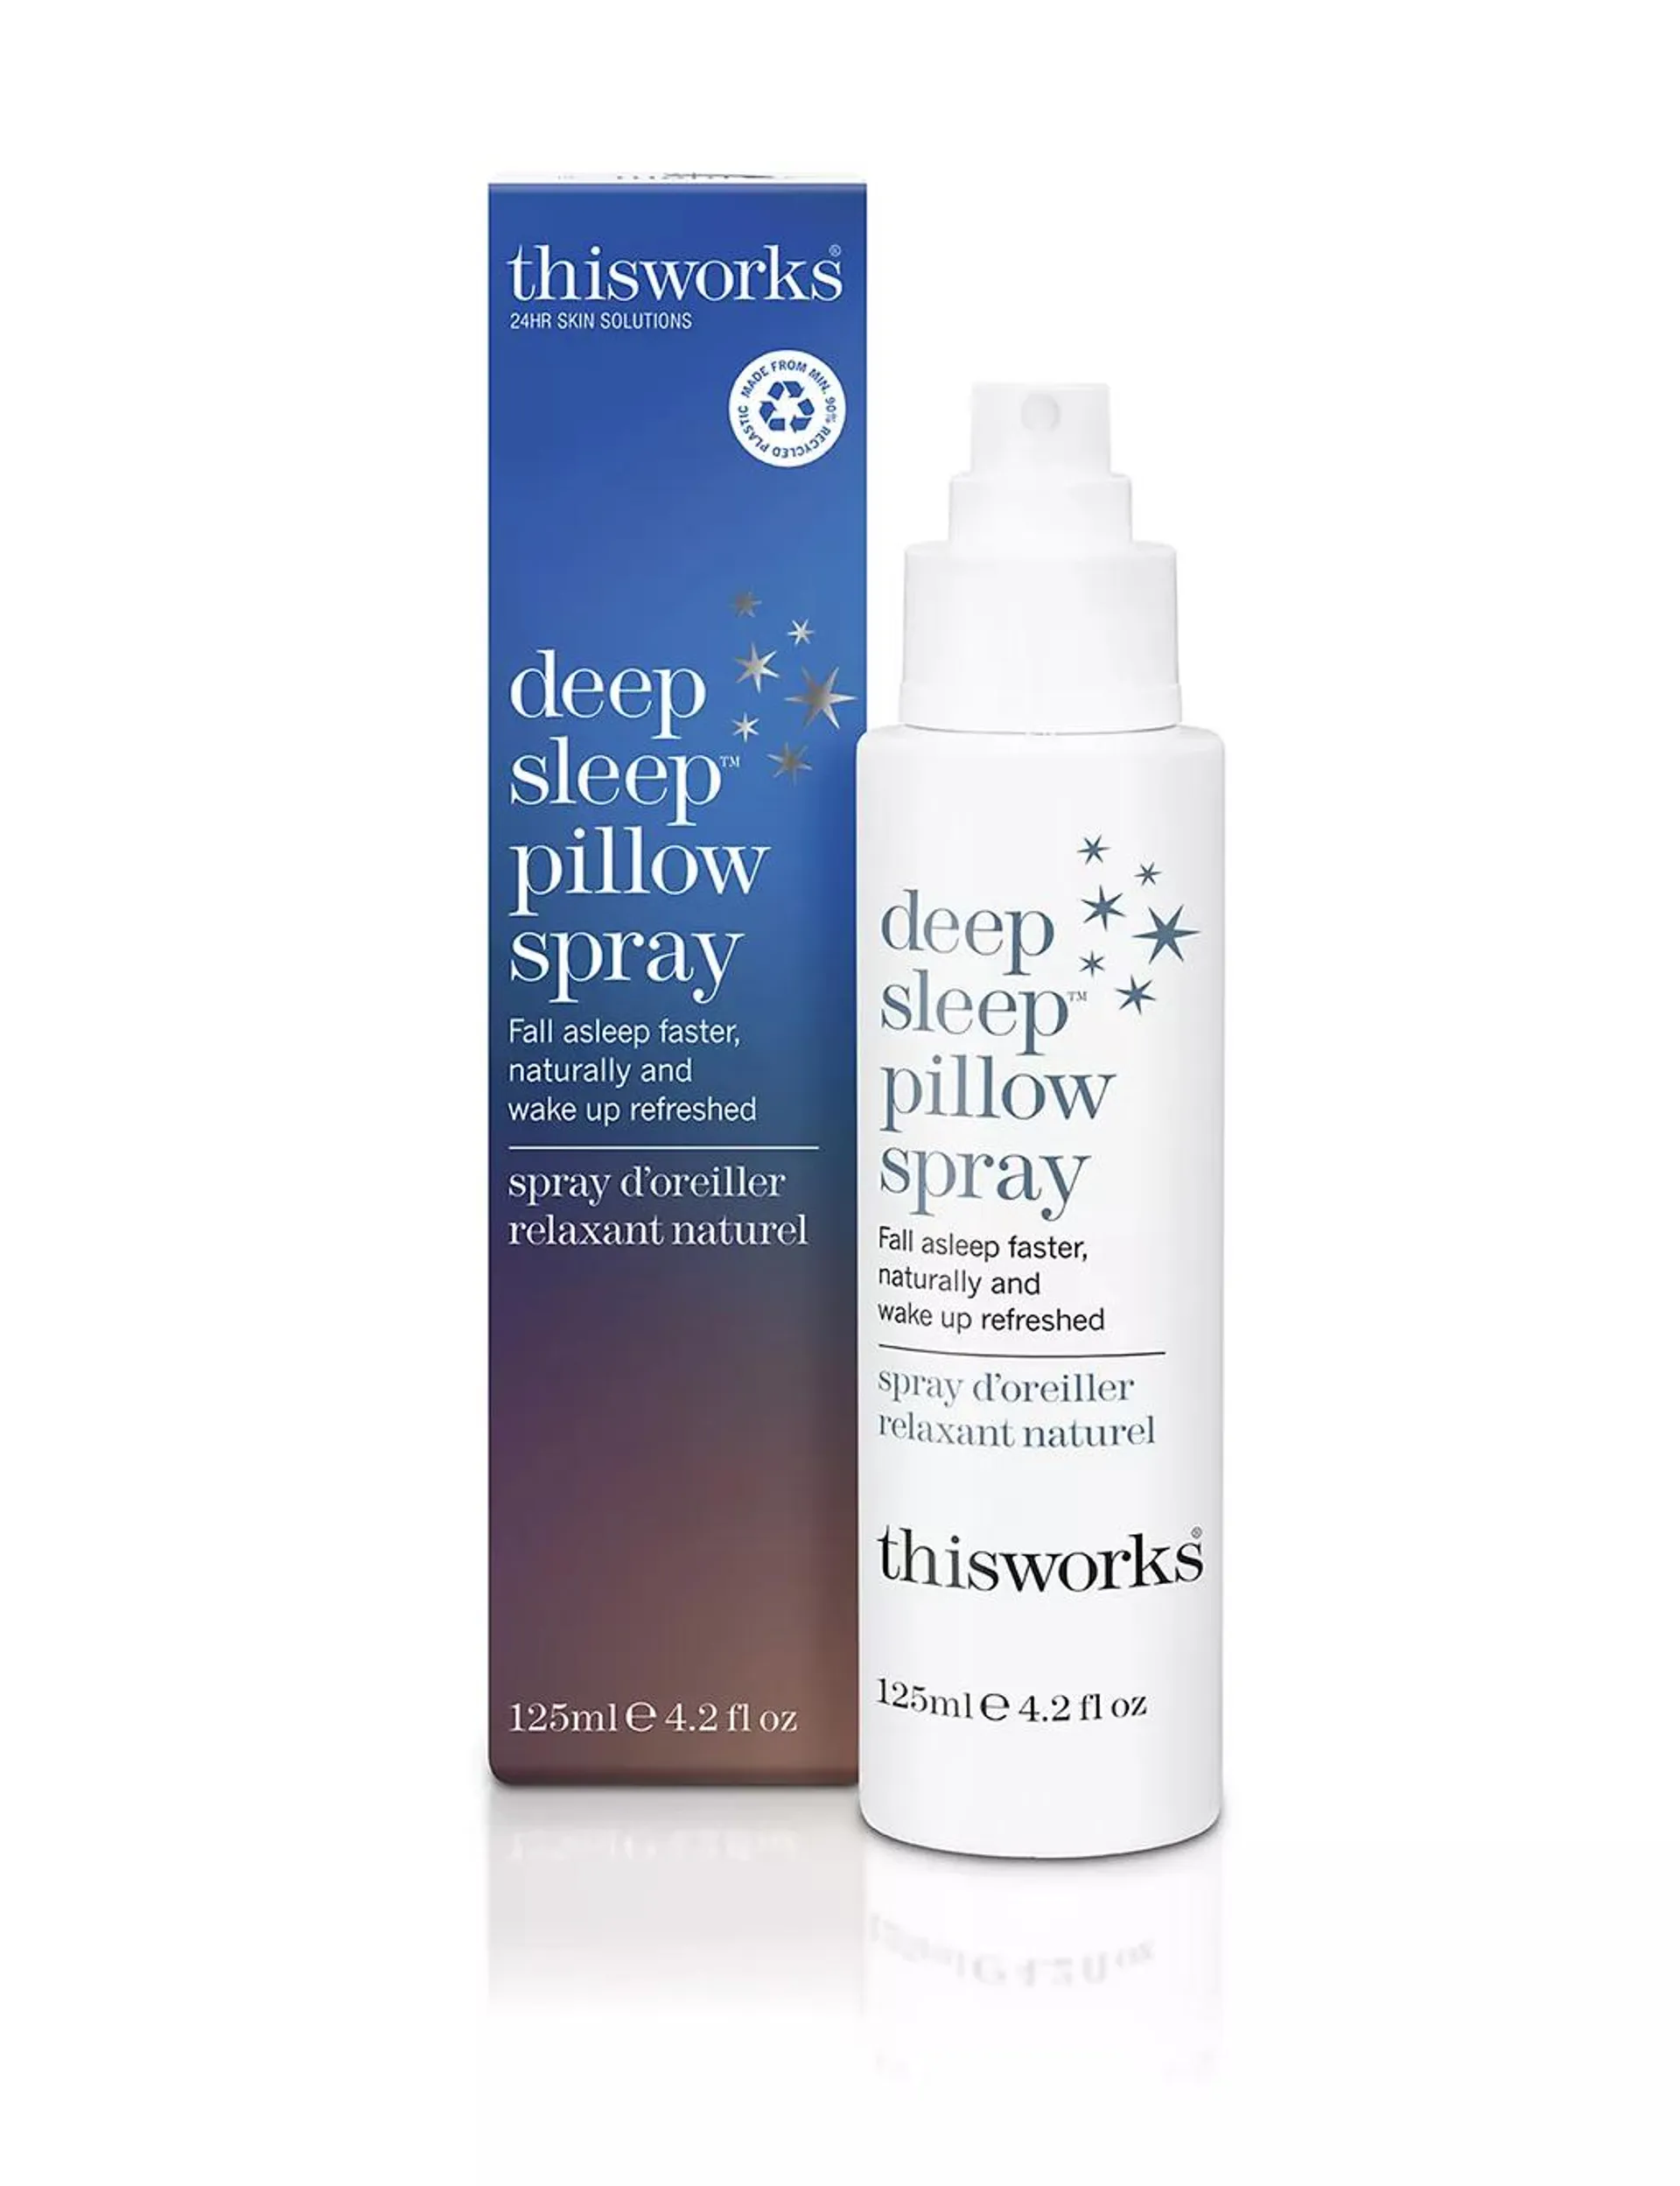 Deep Sleep Pillow Spray Limited Edition 125ml